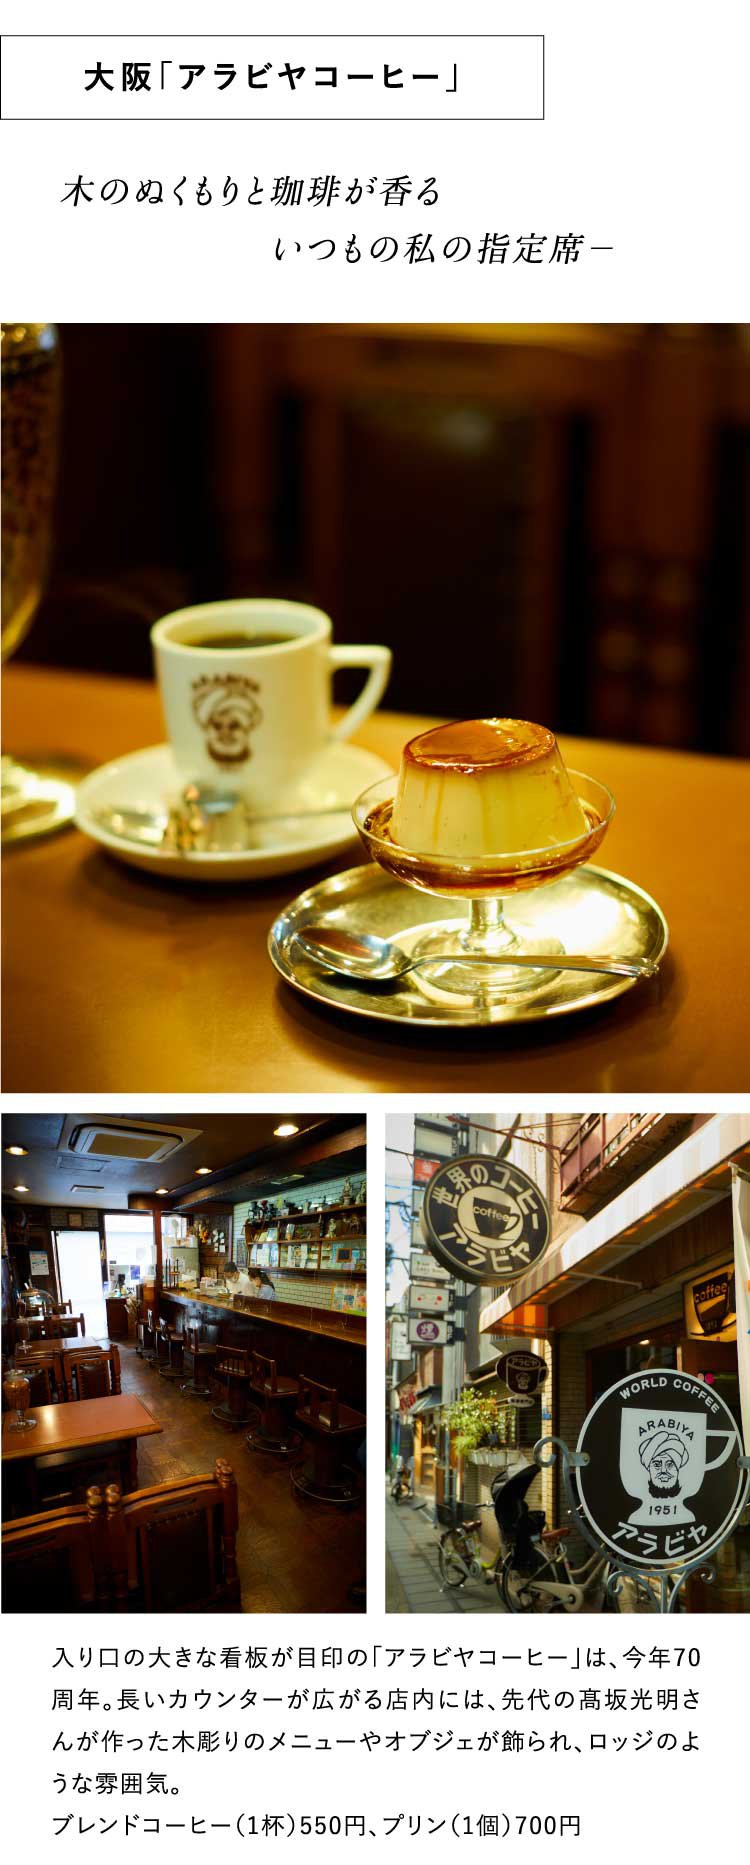 木のぬくもりと珈琲が香る
                               　　　　　　いつもの私の指定席－大阪「アラビヤコーヒー」入り口の大きな看板が目印の「アラビヤコーヒー」は、今年70周年。長いカウンターが広がる店内には、先代の高坂光明さんが作った木彫りのメニューやオブジェが飾られ、ロッジのような雰囲気。
                               ブレンドコーヒー（1杯）550円、プリン（1個）700円 